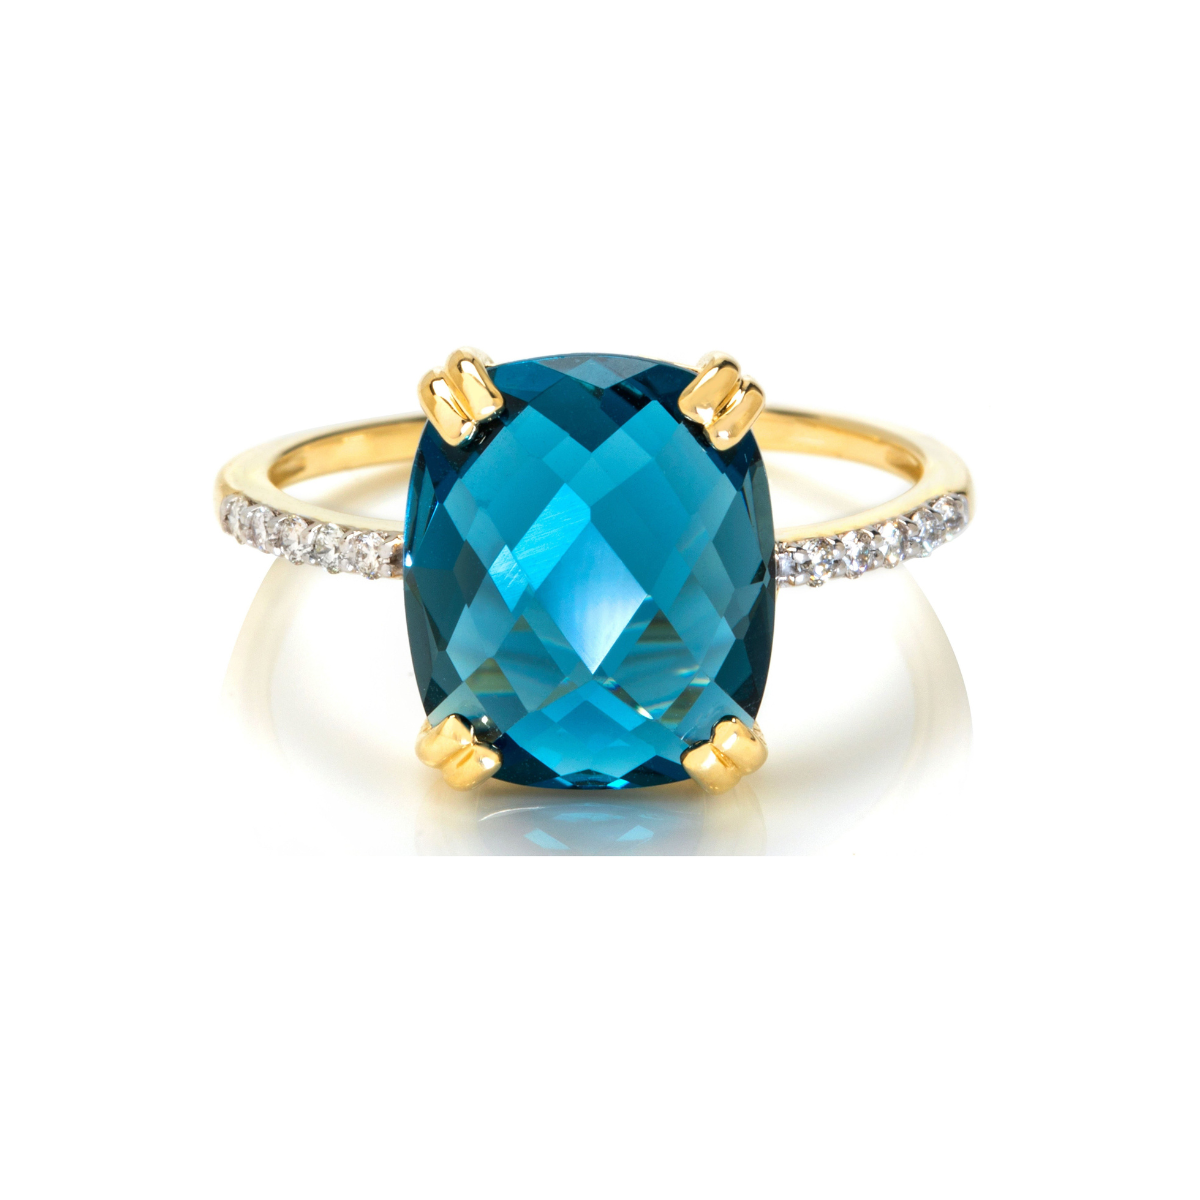 定制 9ct 黄金伦敦蓝色托帕石垫形切割钻石戒指（12x10mm）——精致优雅、永恒之美